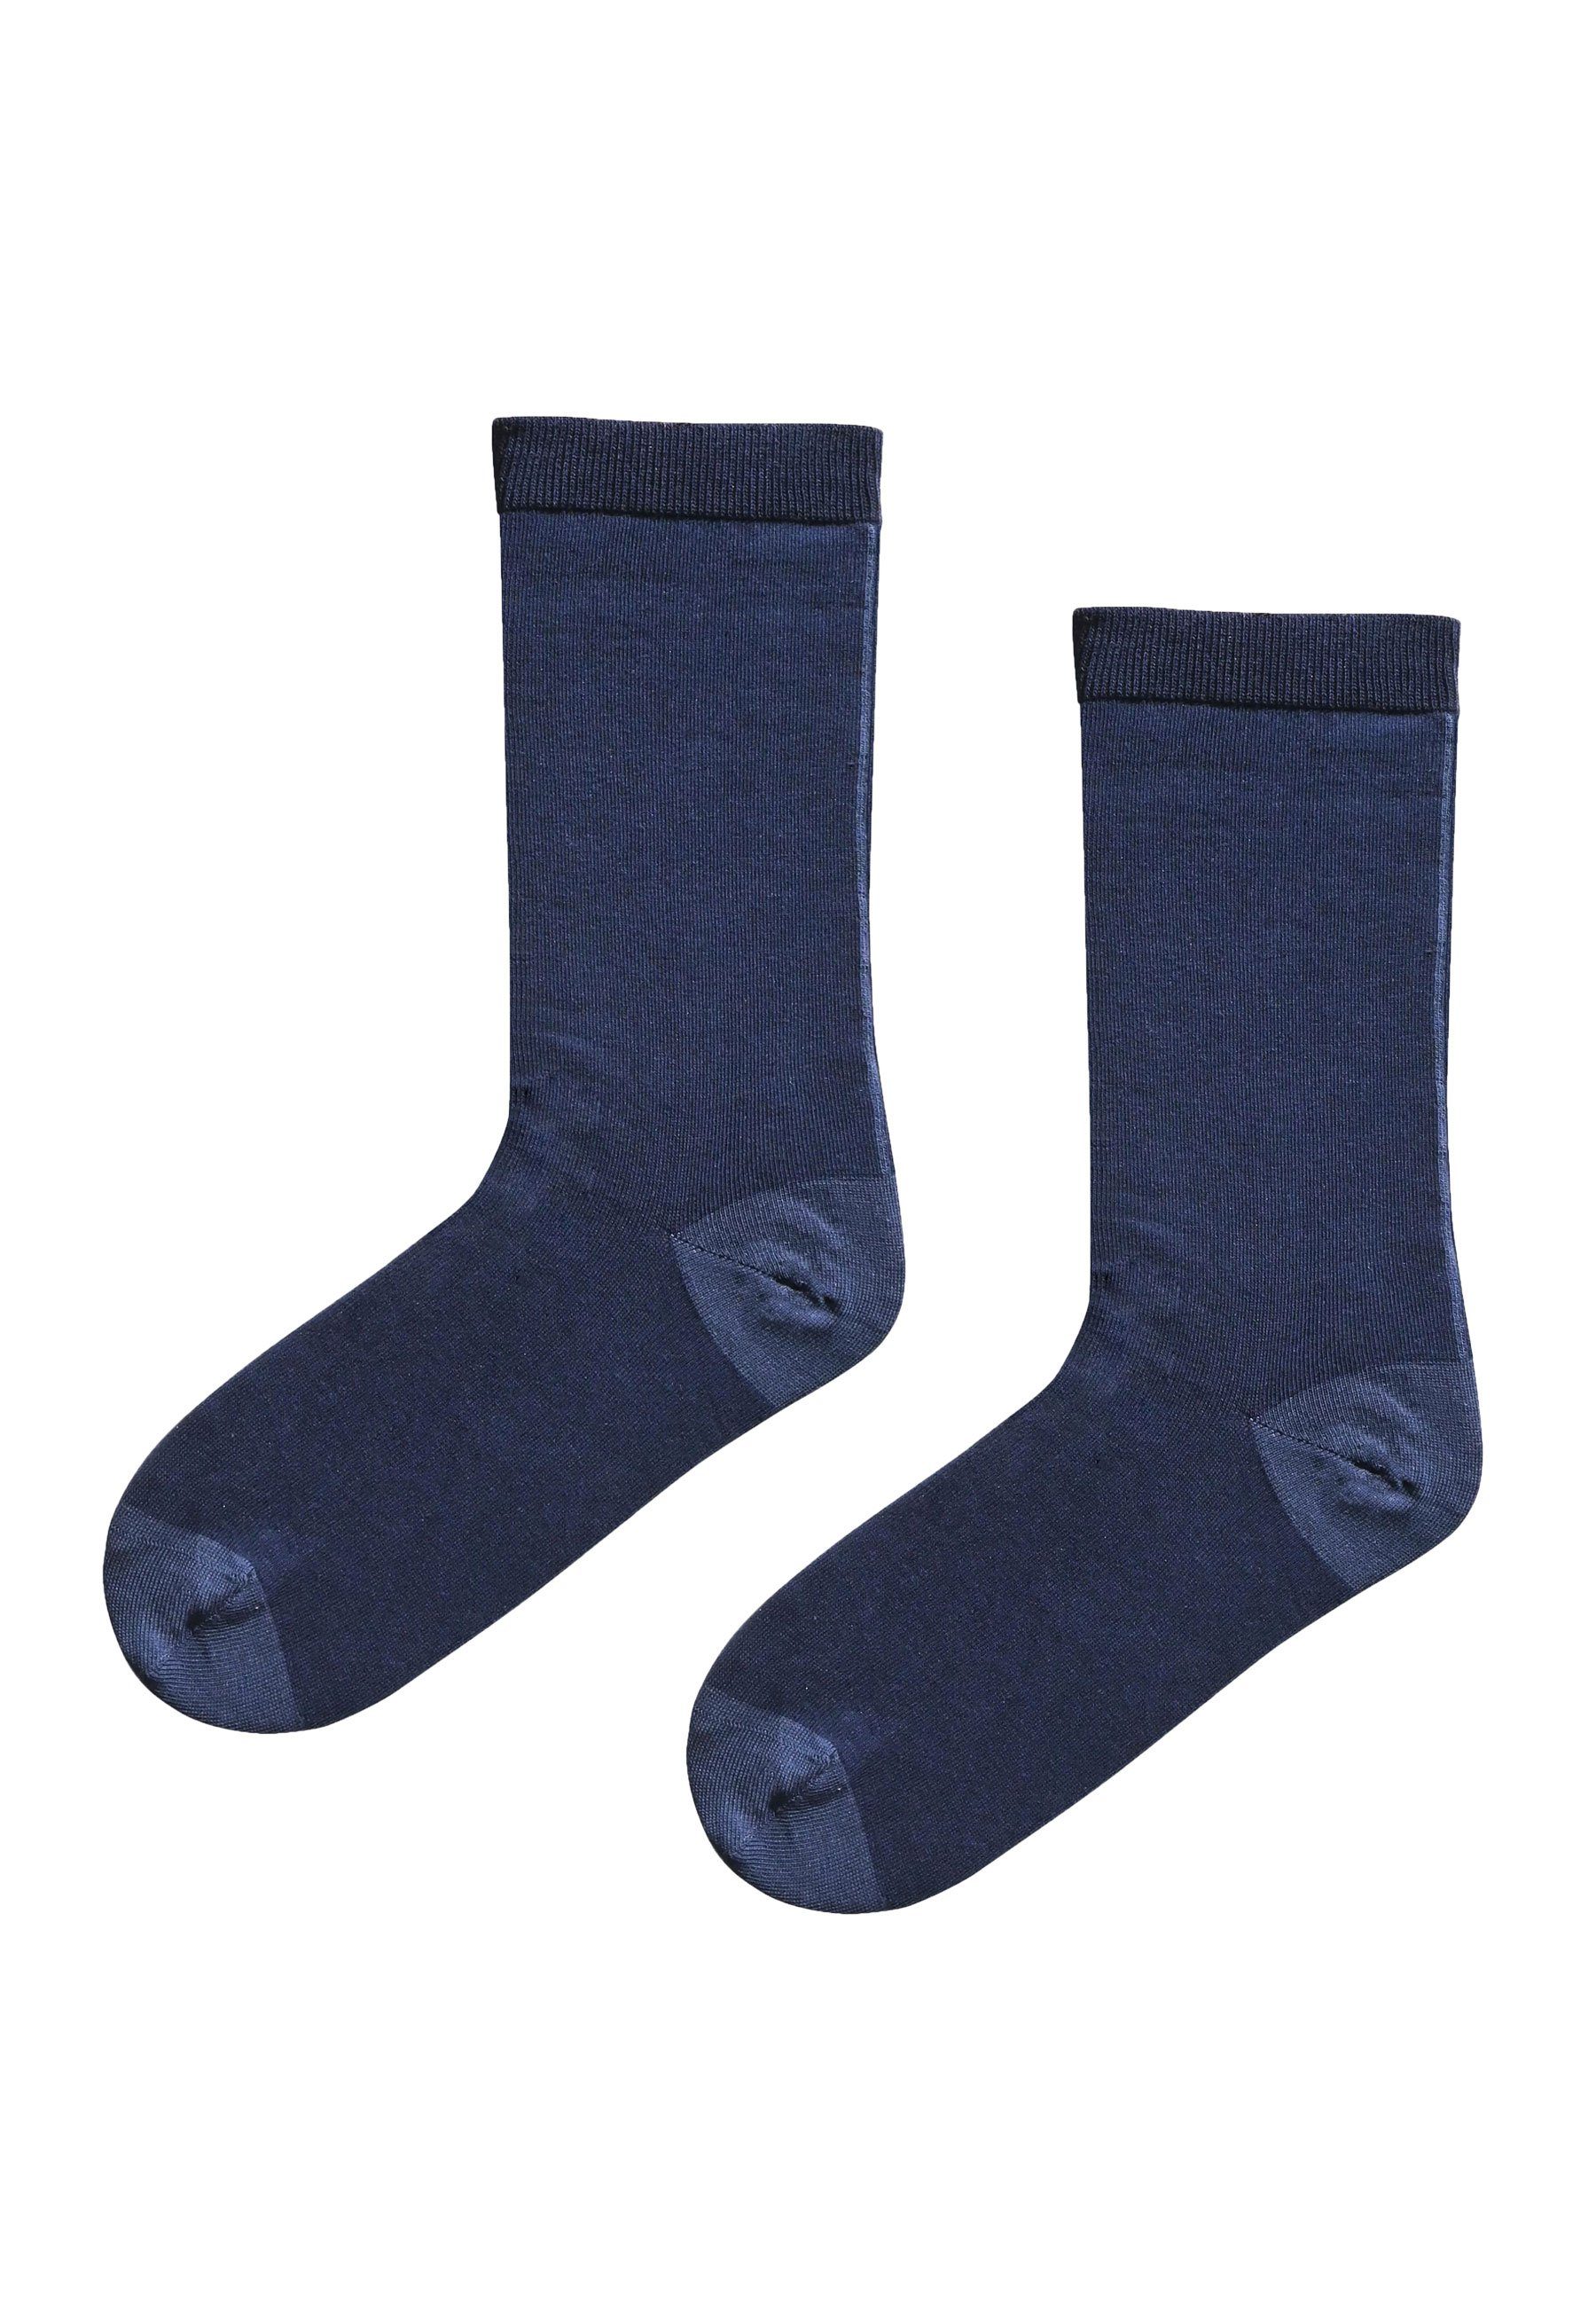 Elkline Socken Schönefüsschen Socken Schönefüsschen zweifarbig navy - blueshadow